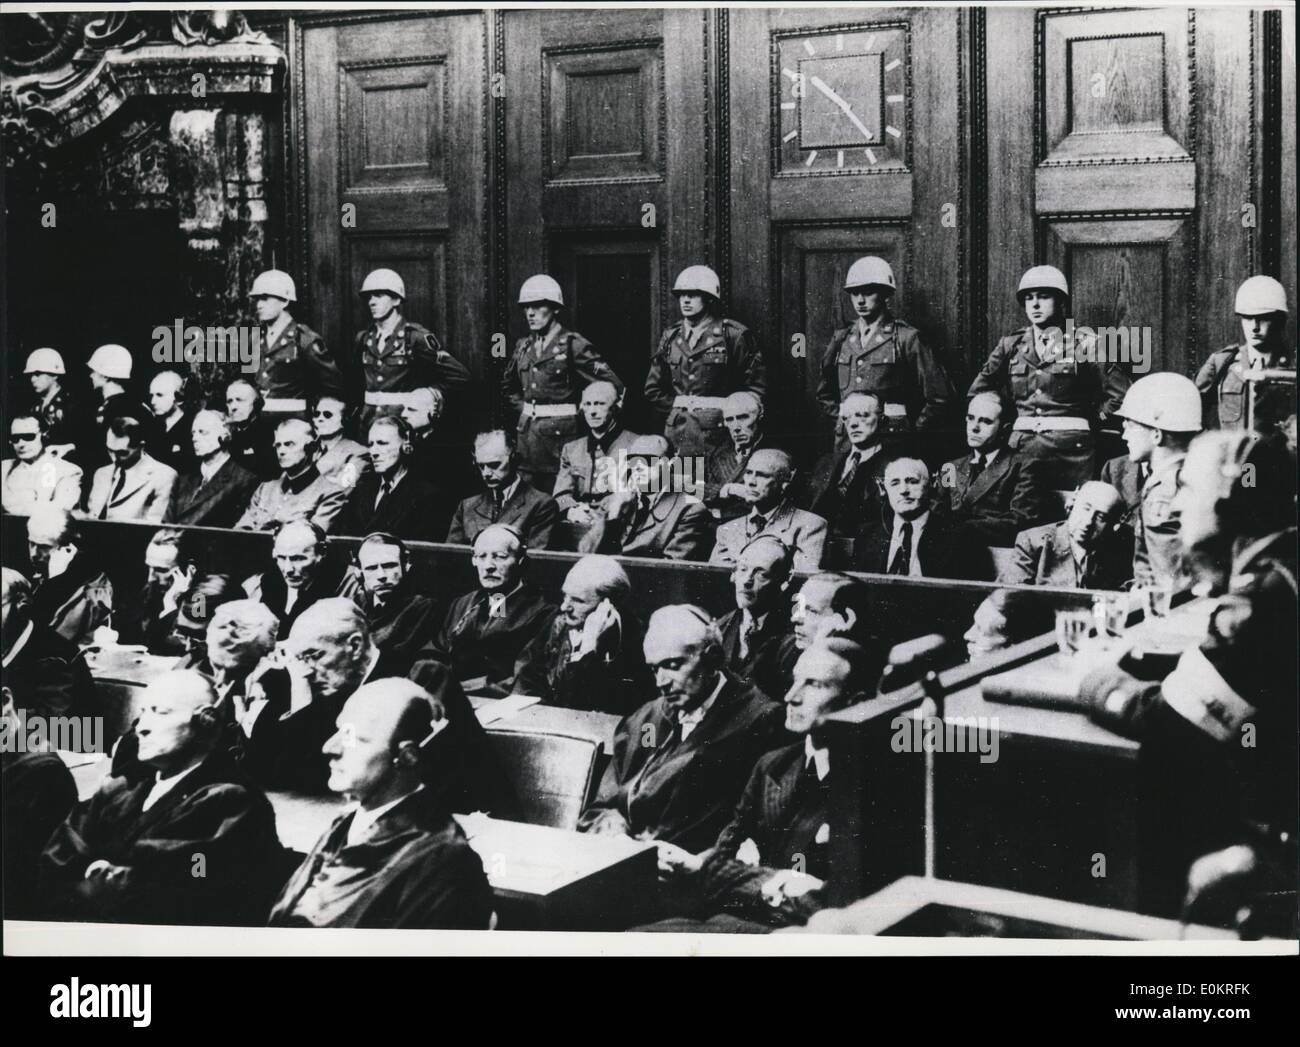 Ottobre 10, 1946 - pronunciare sentenze al processo di Norimberga: 30 anni fa, il 1 ottobre 1946, le sentenze alla Guerra Norimberga processo penale sono stati annunciati. In questa versione di prova più grande della storia, le seguenti persone sono state condannate per appendere: Ribbentrop, sauckel, katenbrunner, frick frank, stroicher, satB-inquart, Rosenberg, keitel e jodi. Ley suicidato prima della sentenza, goring successivamente; Bormann era stato condannato a morte in assenza Foto Stock